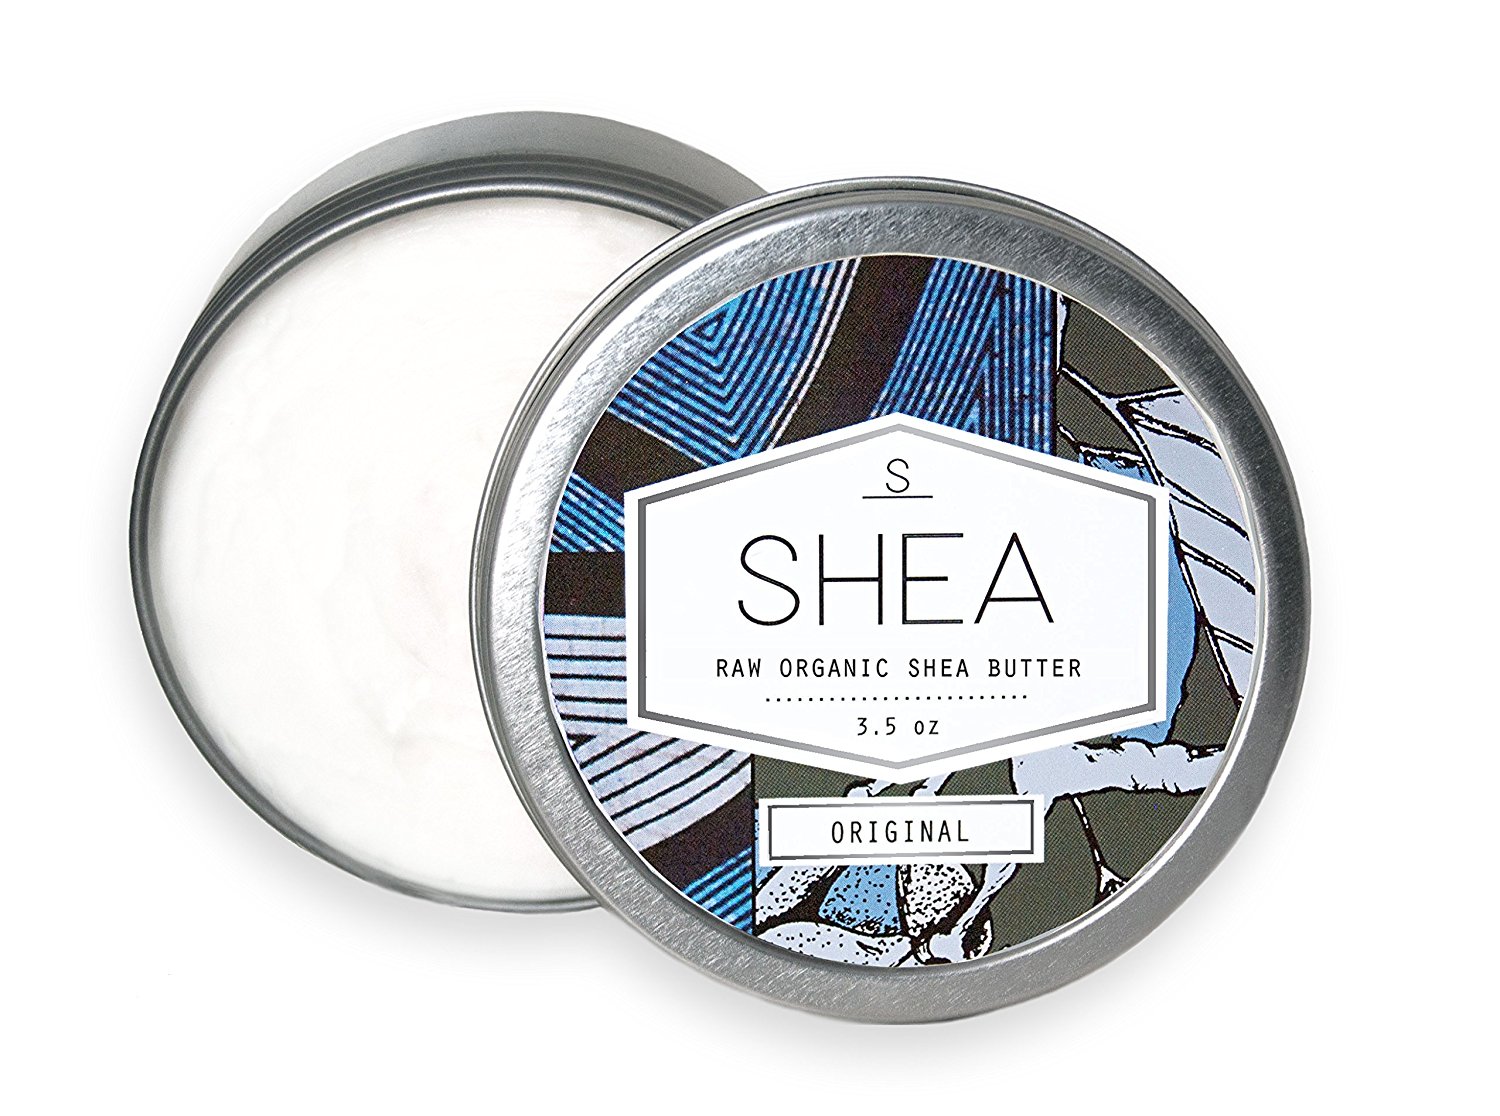 Original Shea - Raw Organic Small Batch Shea Butter - Dry Skin, Lips, Hair, Eczema, Scars, Burns...